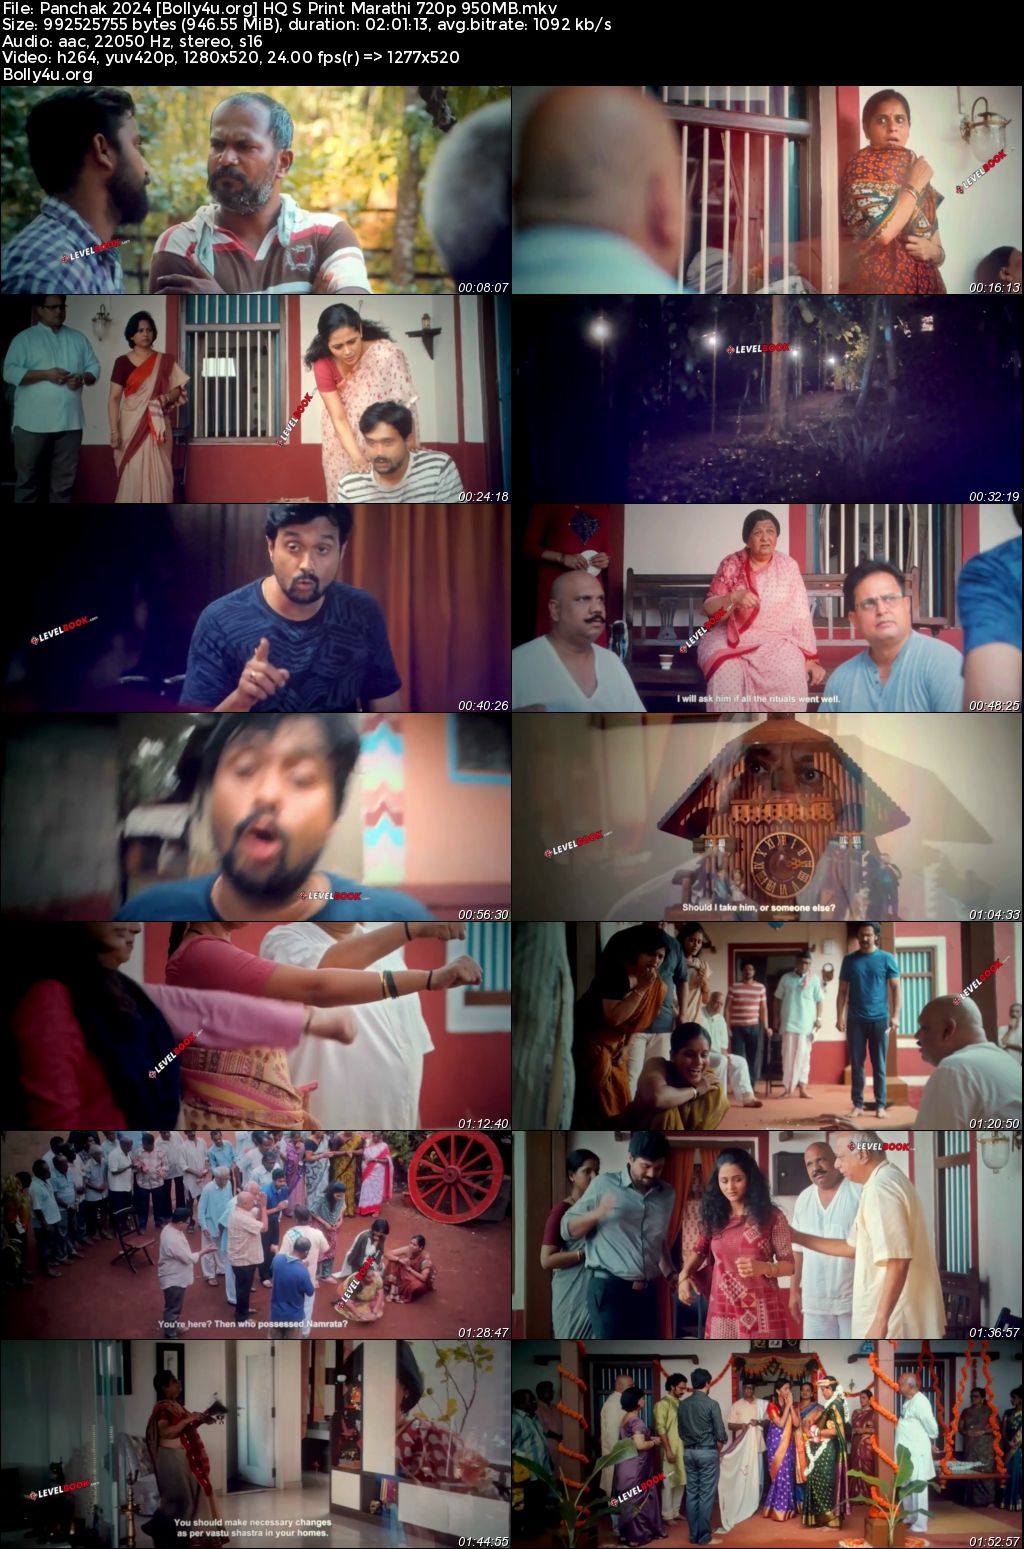 Panchak 2024 HQ S Print Marathi Full Movie Download 720p 480p